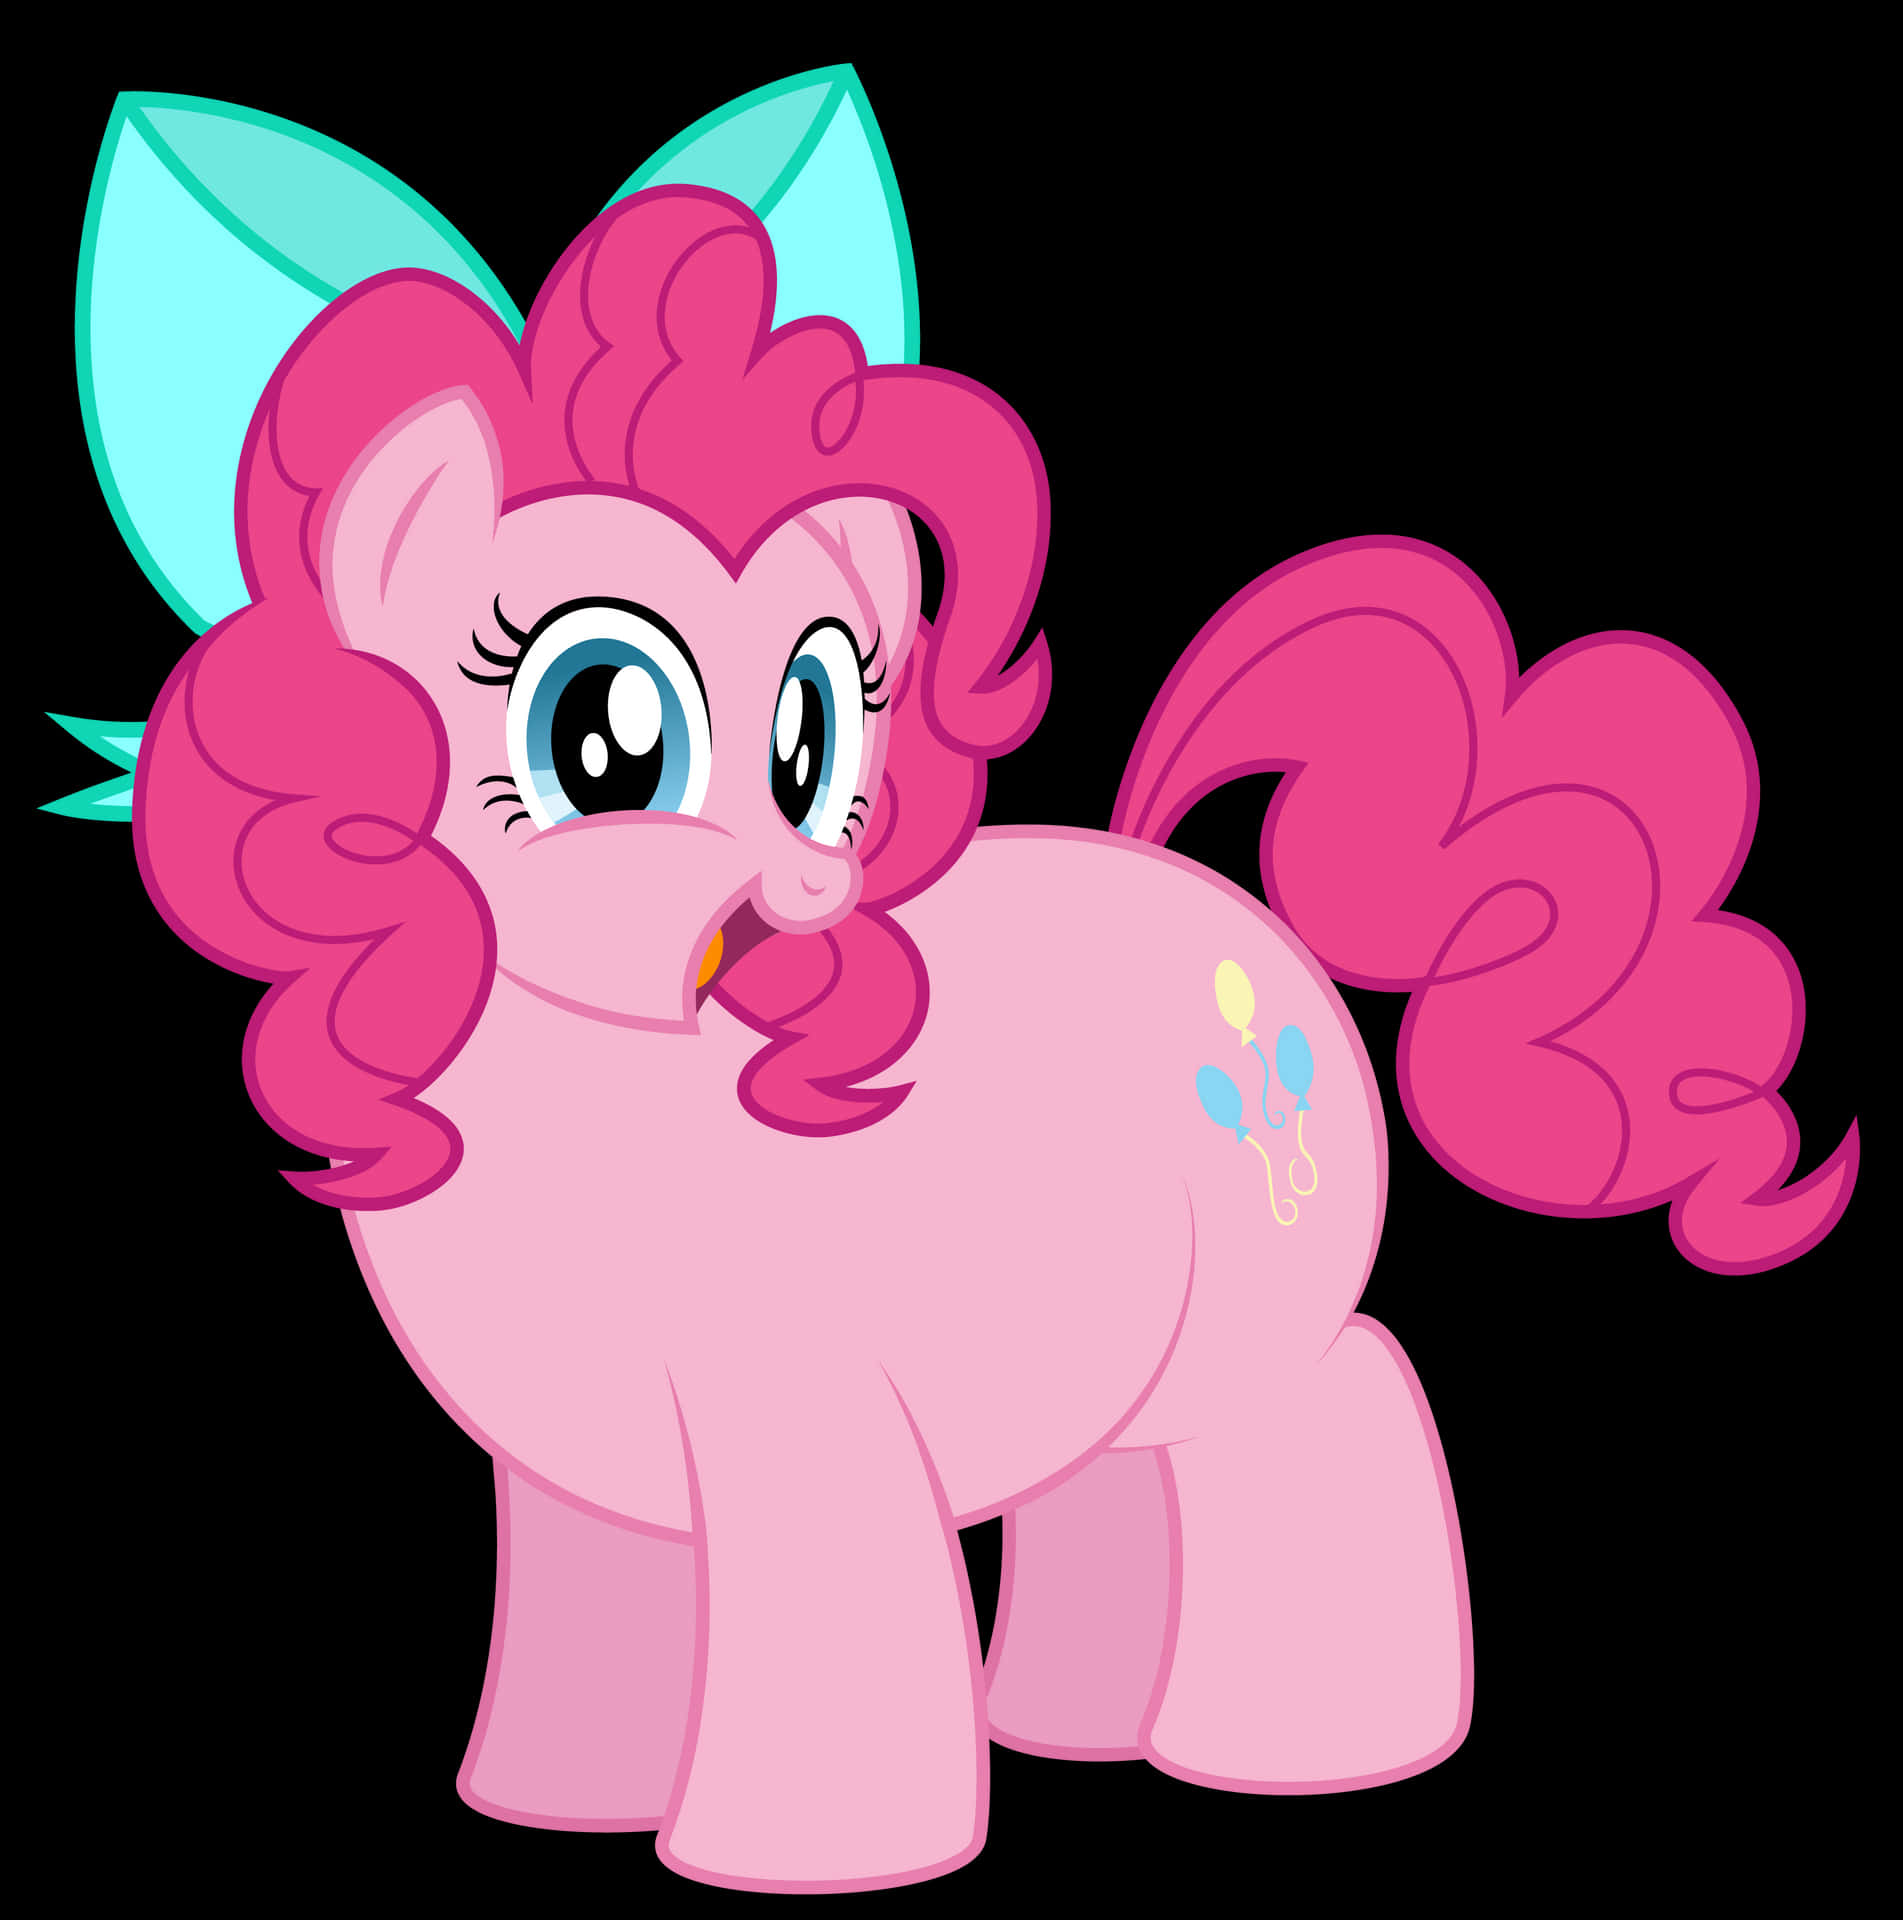 Pinkiepie Från My Little Pony, Firar Vänskapens Glädje!